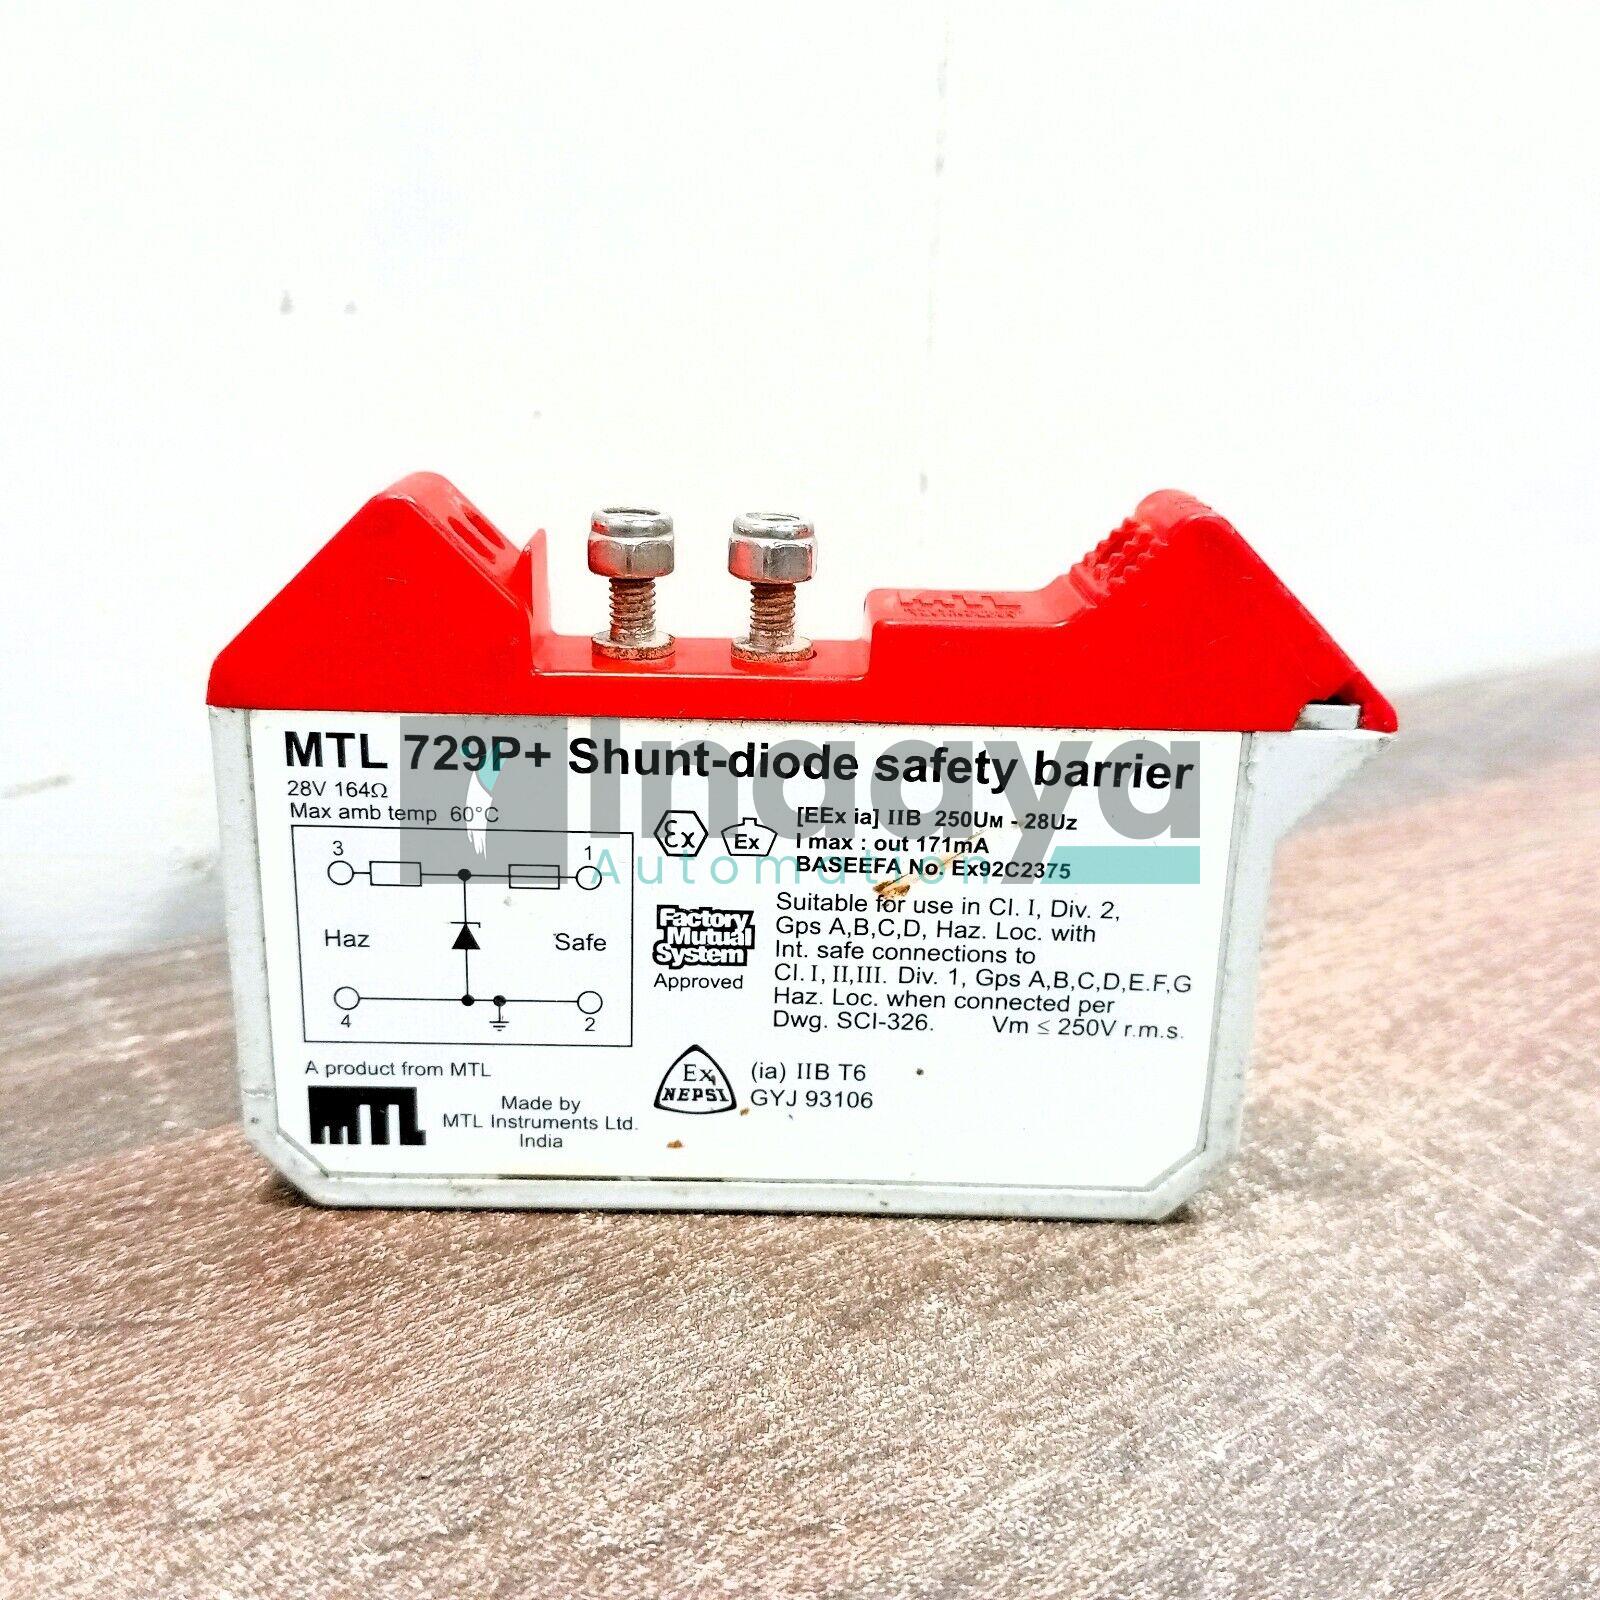 MTL MTL729P+ SHUNT DIODE SAFETY BARRIER 28 VOLT +VE 164 OHM IIB GASSES